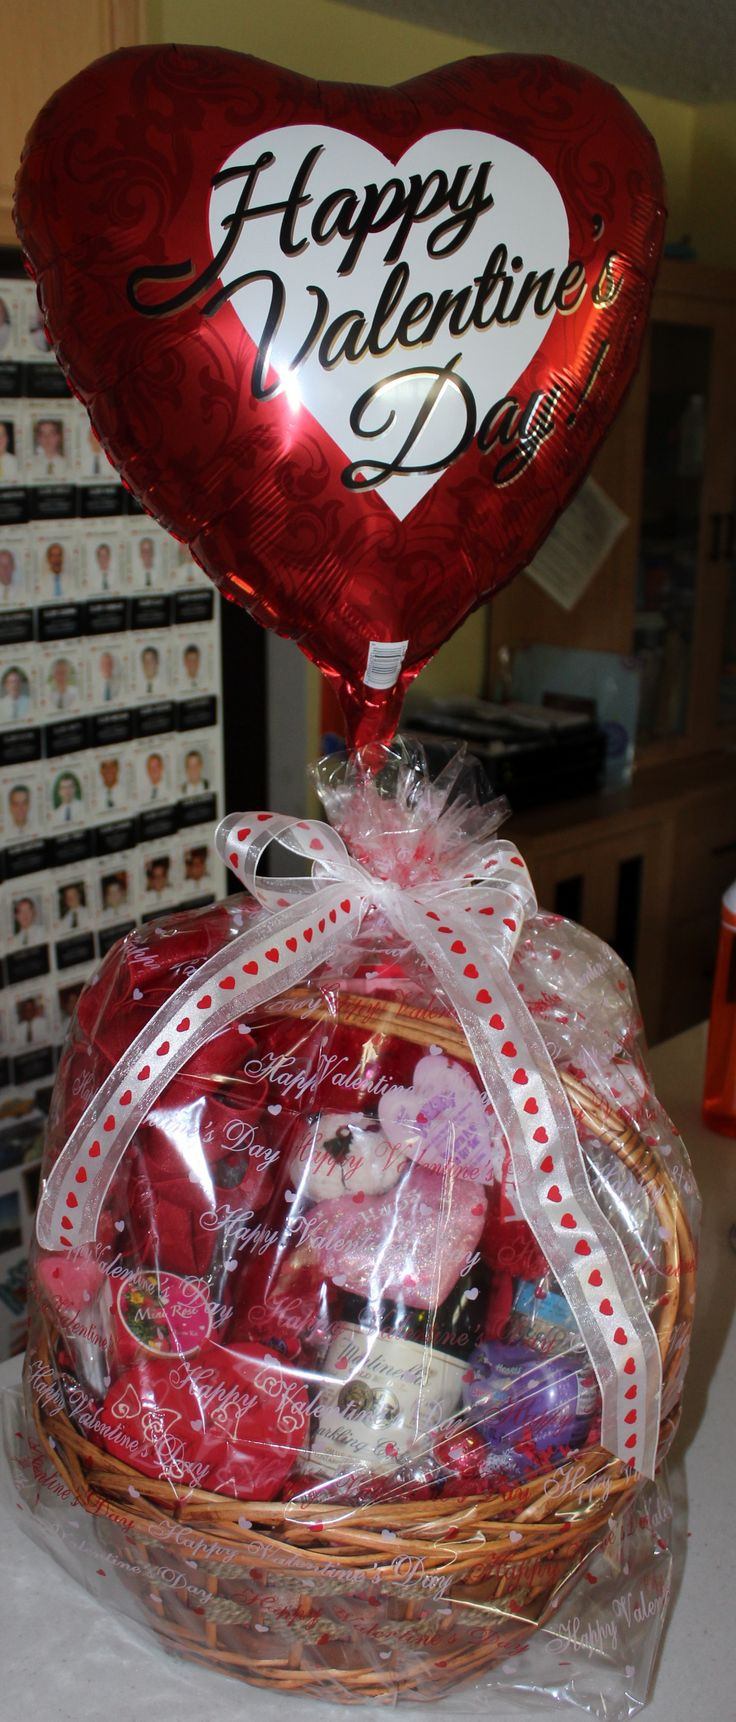 Mens Valentine Gift Basket Ideas
 Best 25 Valentine t baskets ideas on Pinterest